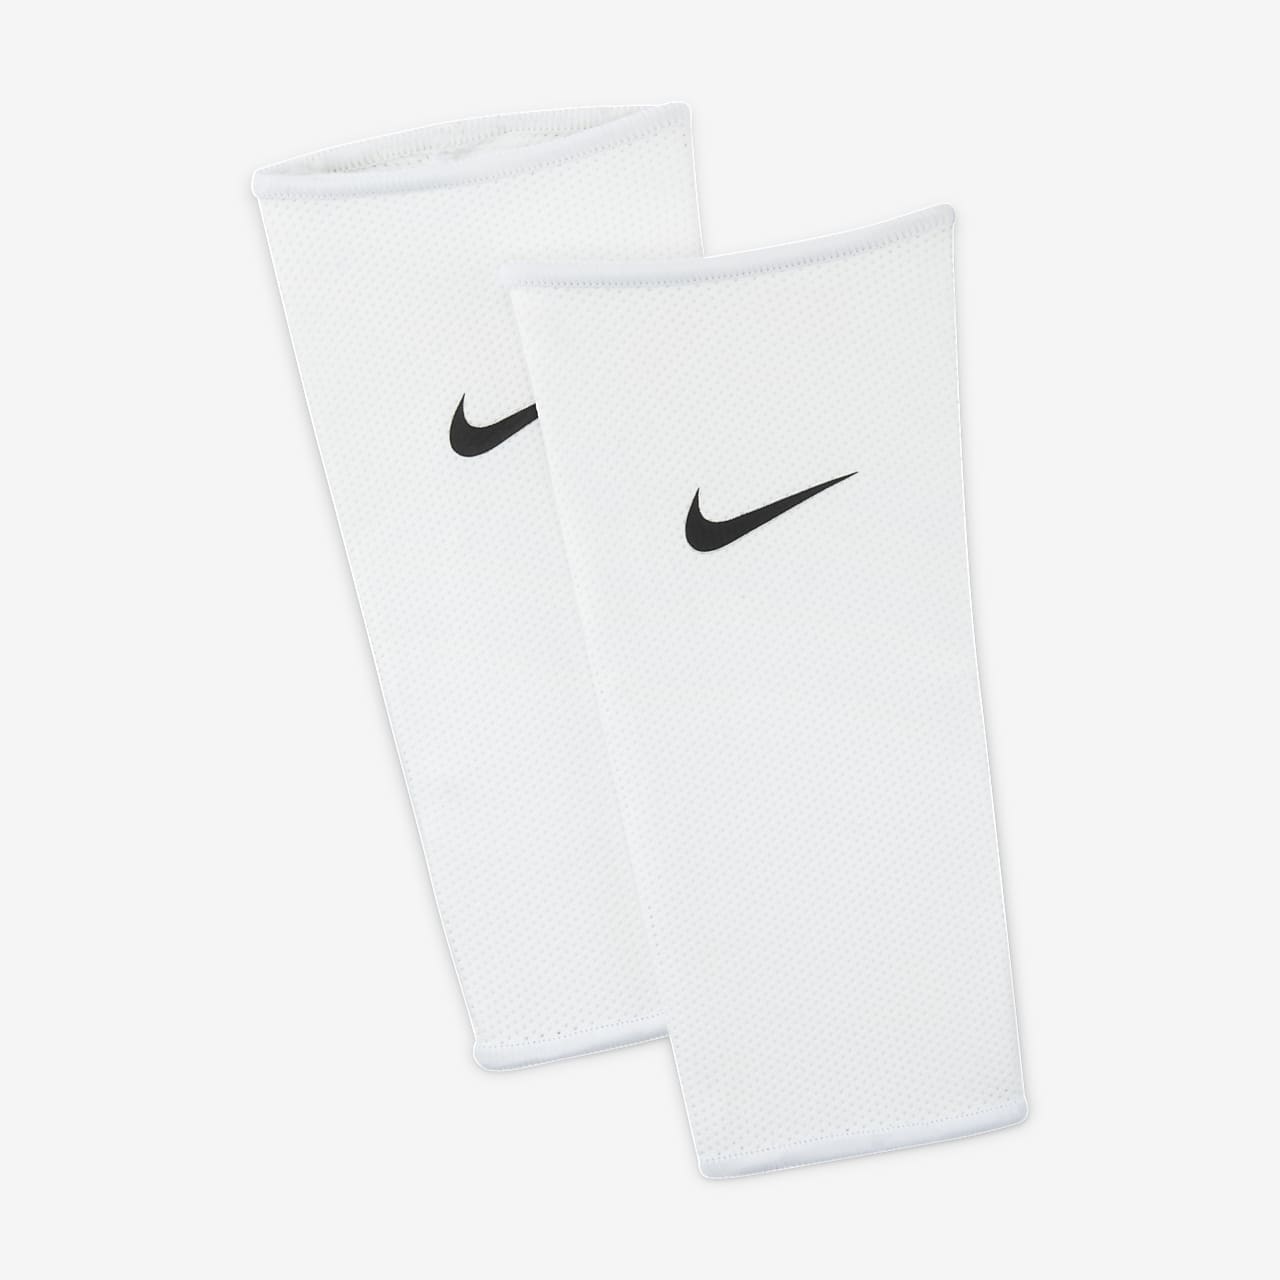 Pro Vapor 3.0 Baseball Forearm Slider Sleeve from Nike